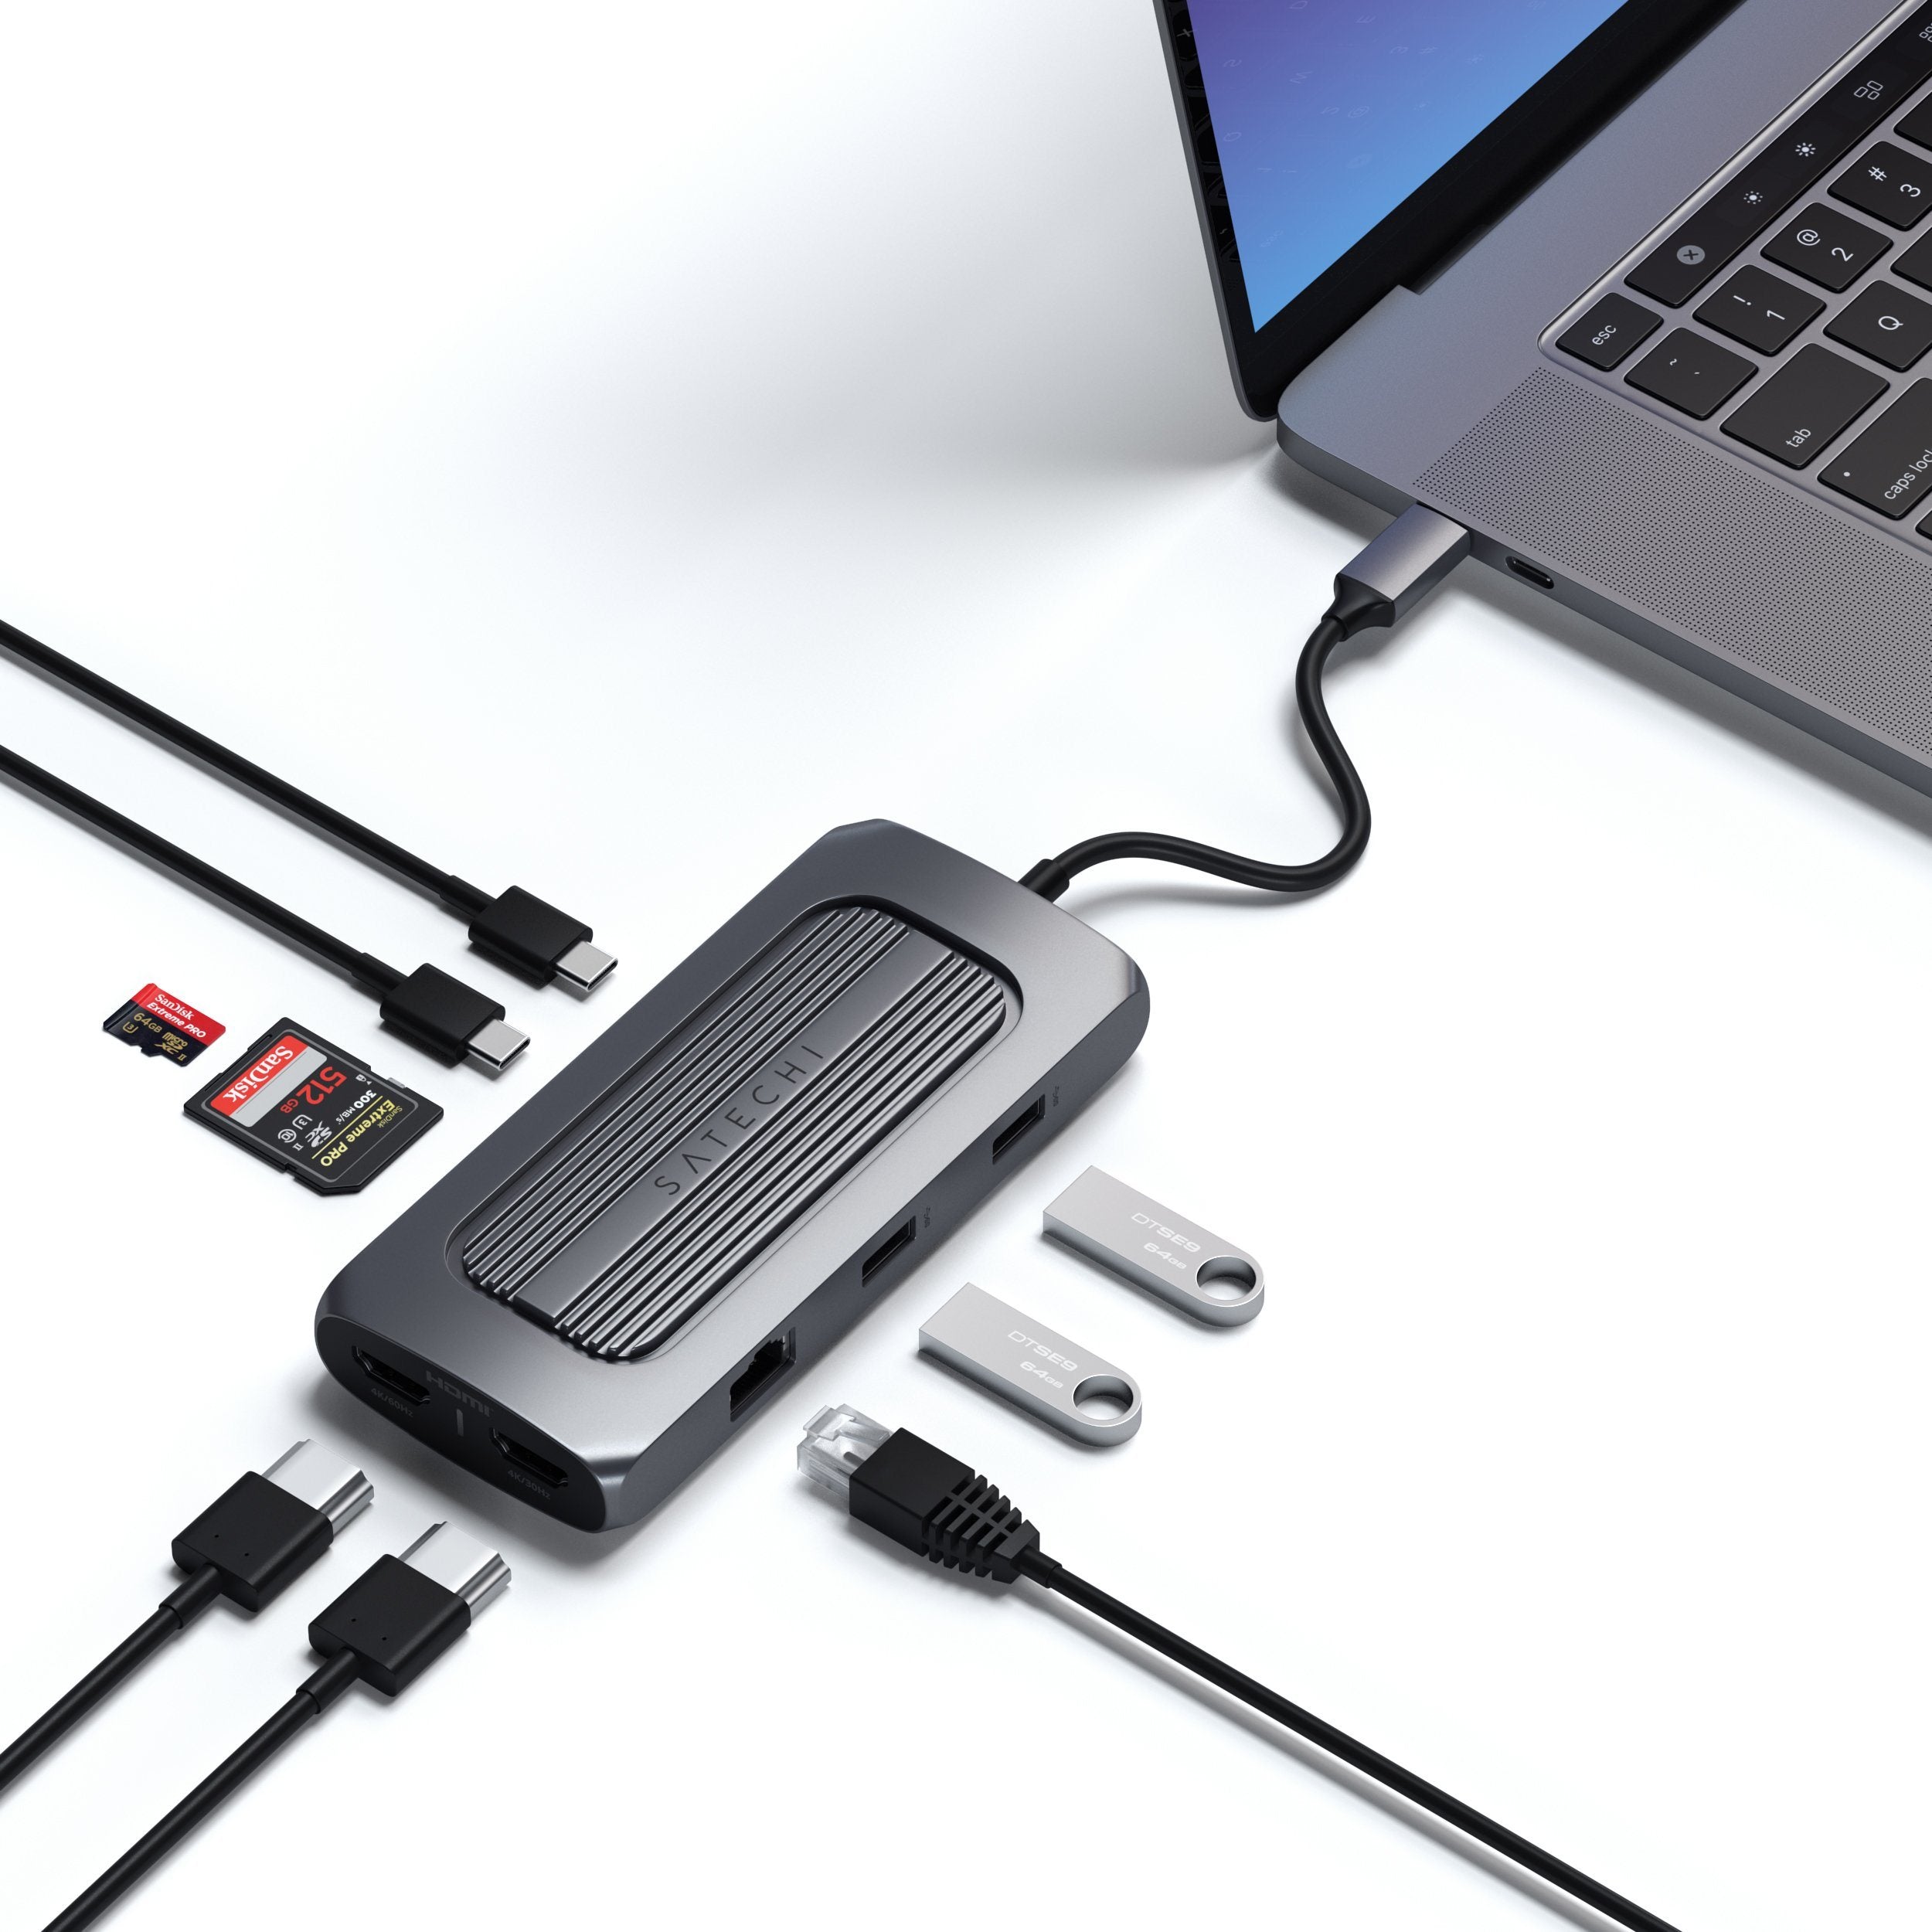 ADAPTADOR HUB MULTIPUERTO USB-C 6 EN 1, HDMI, USB 3.0, T